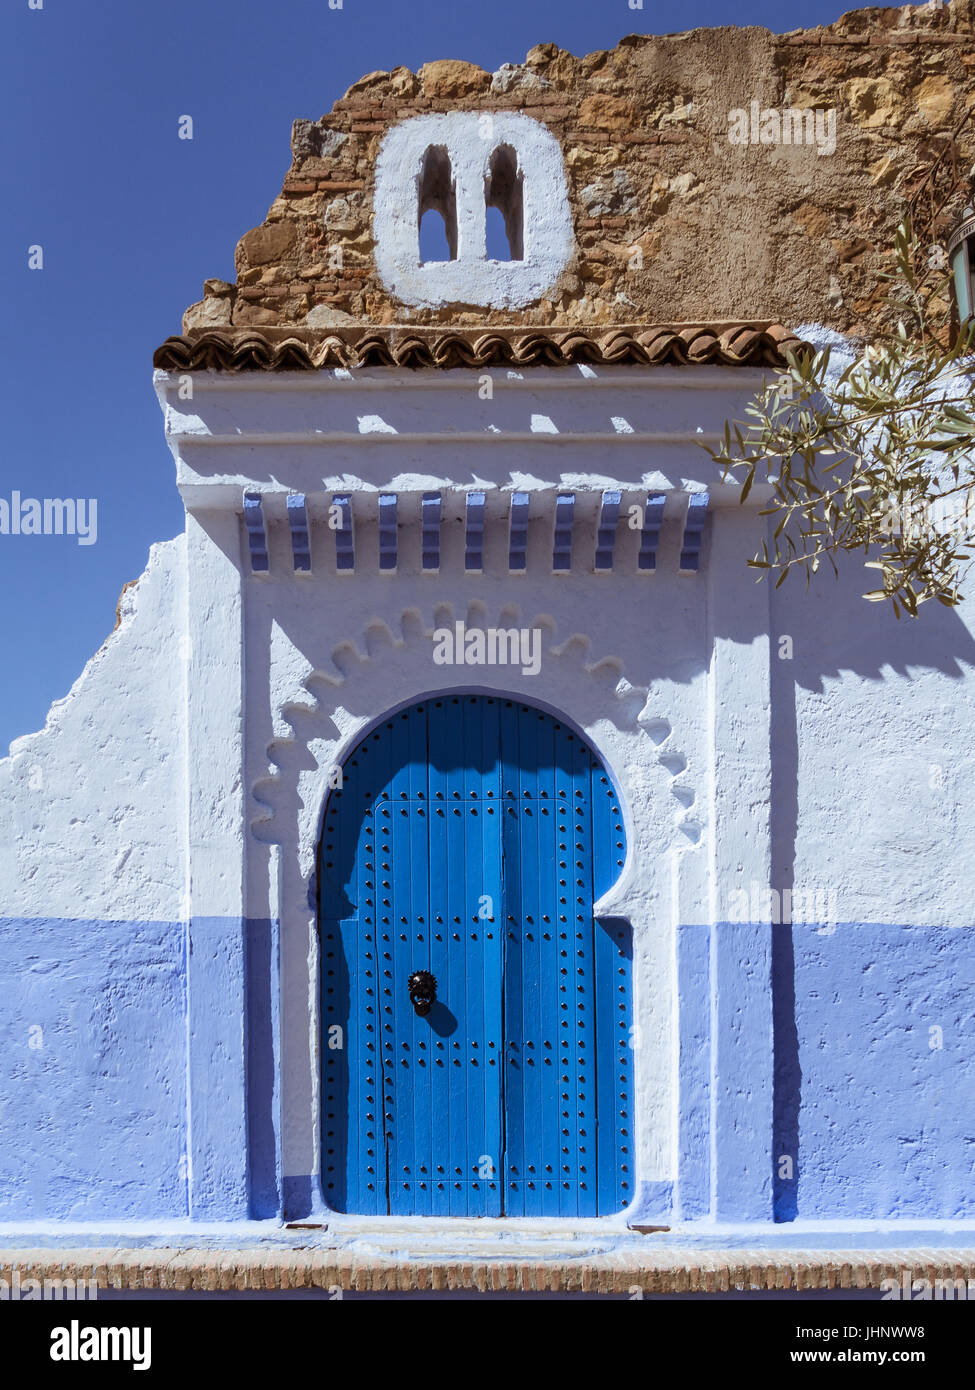 La porte d'entrée dans la ville de Chefchaouen, Nord du Maroc Photo Stock -  Alamy